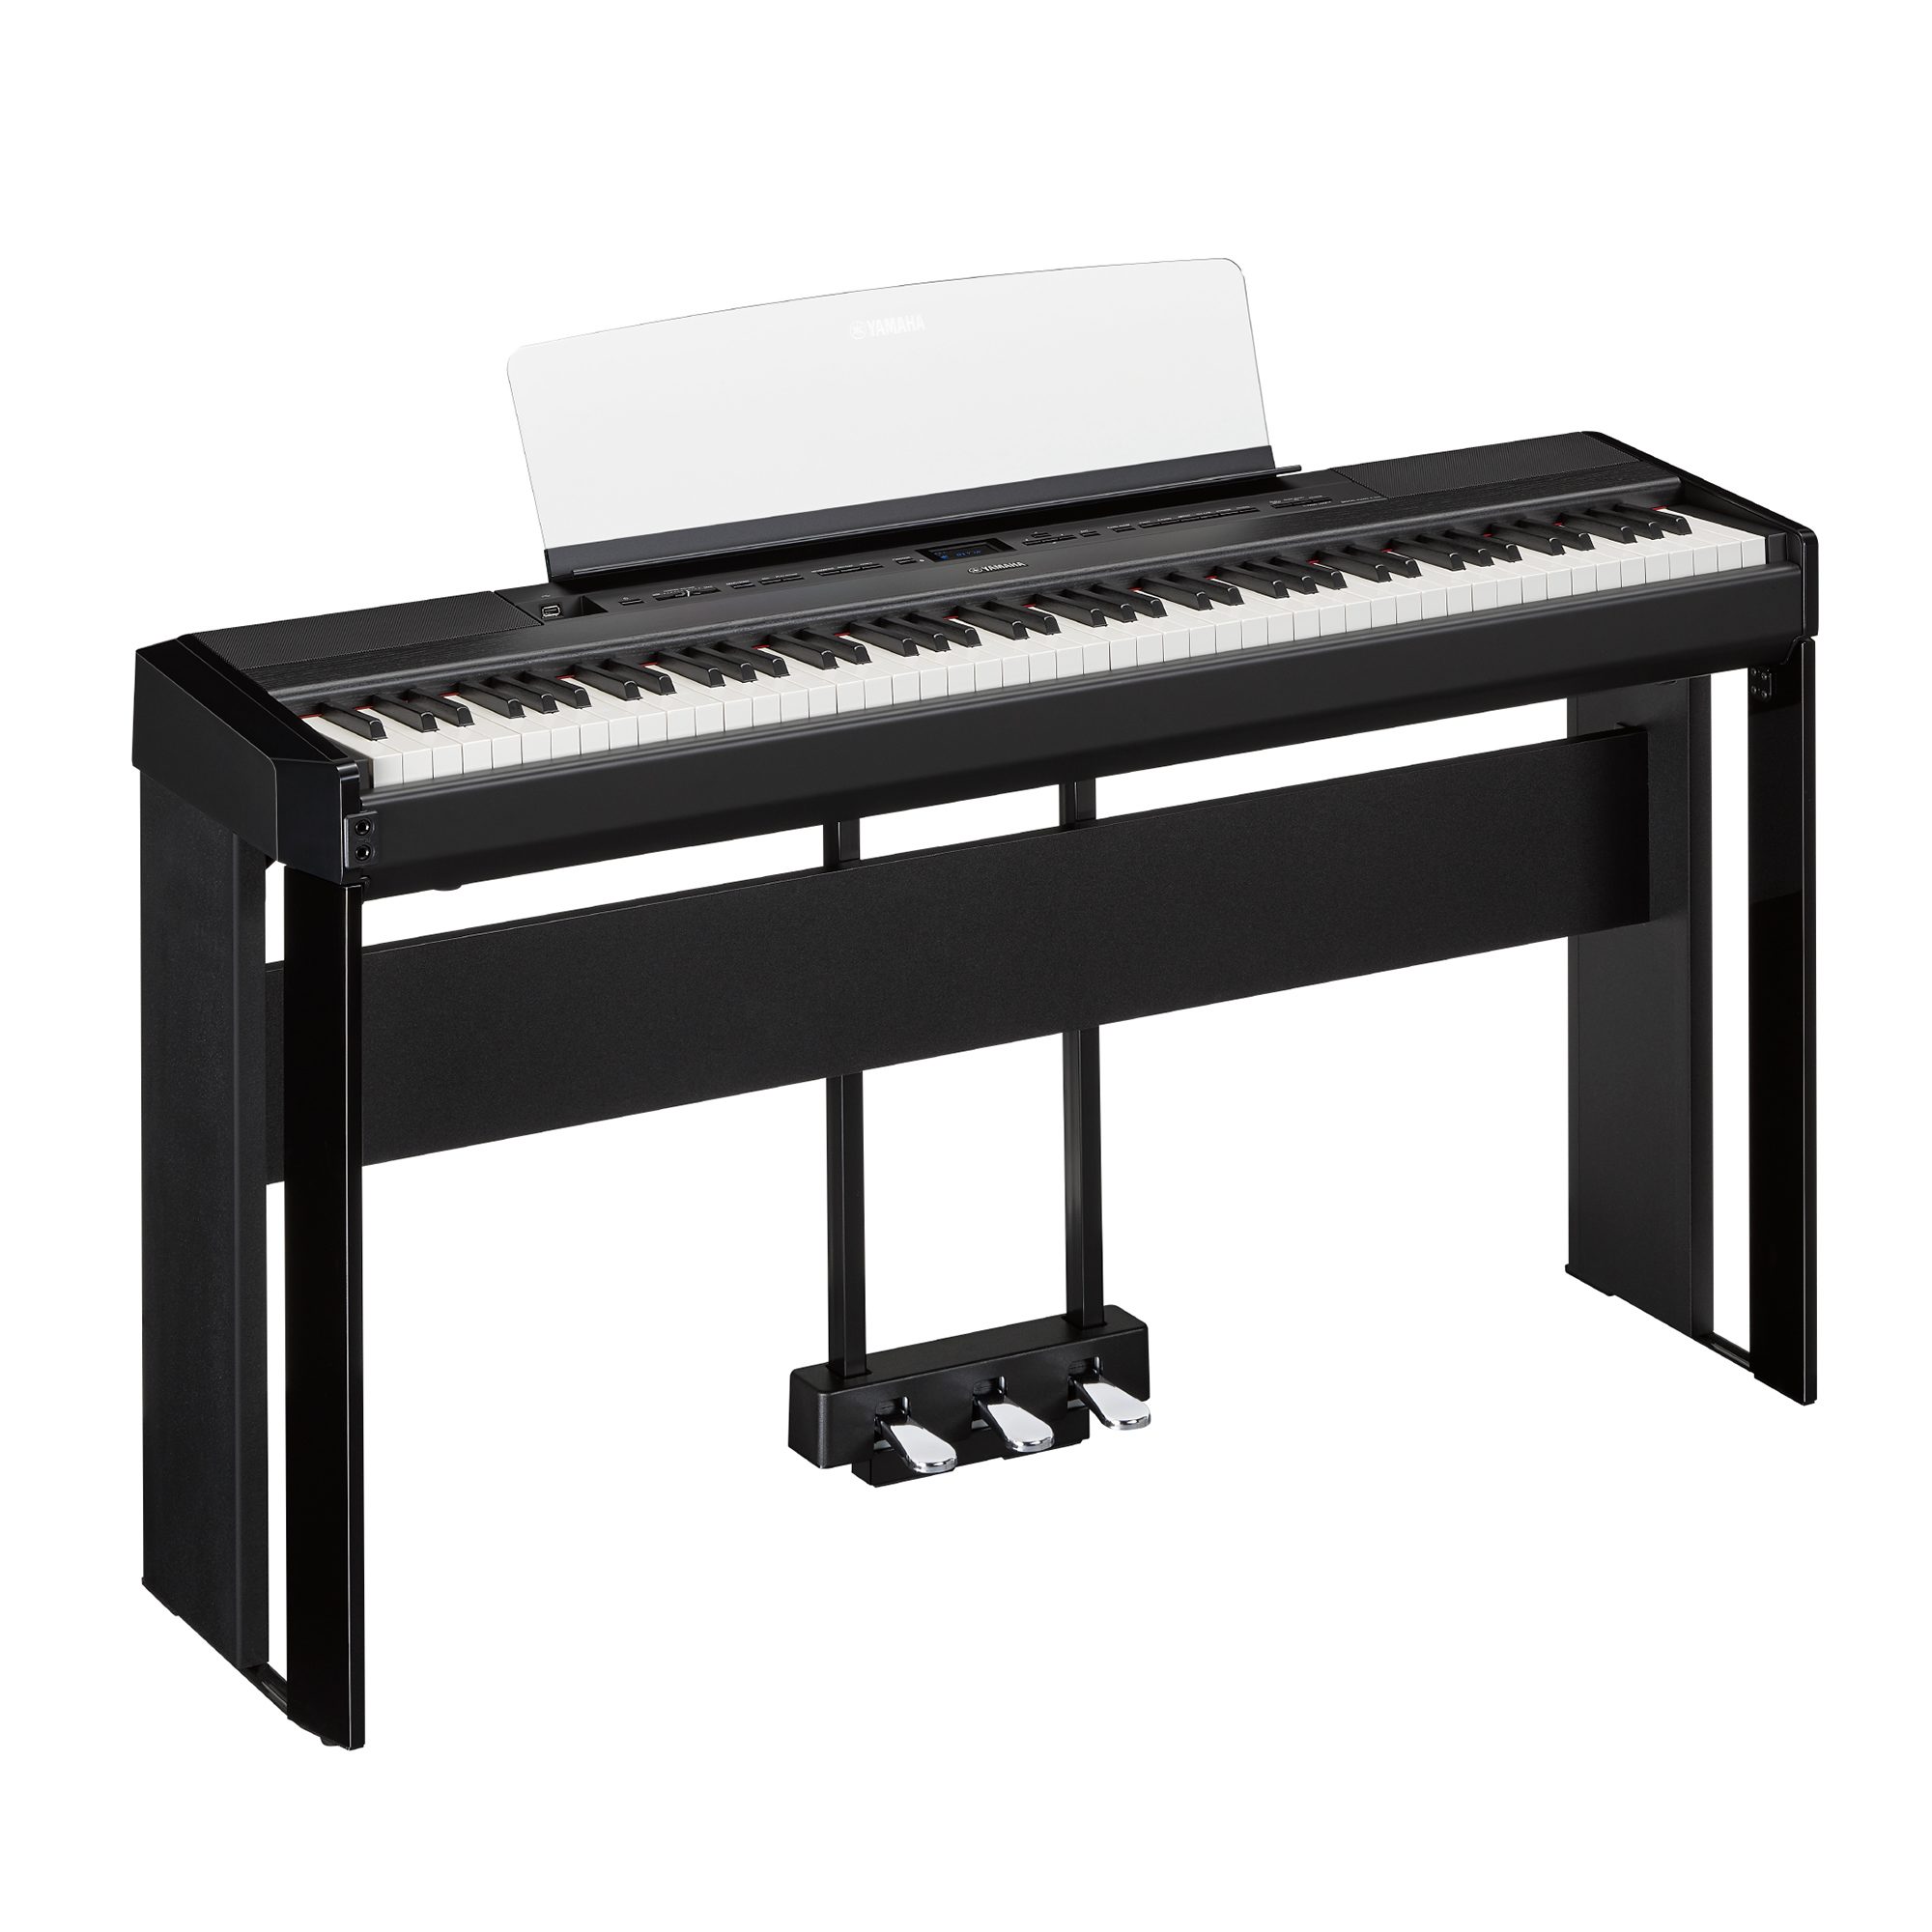 ヤマハ キーボードスタンド ブラック L-515B [L515B] - ピアノ・キーボード